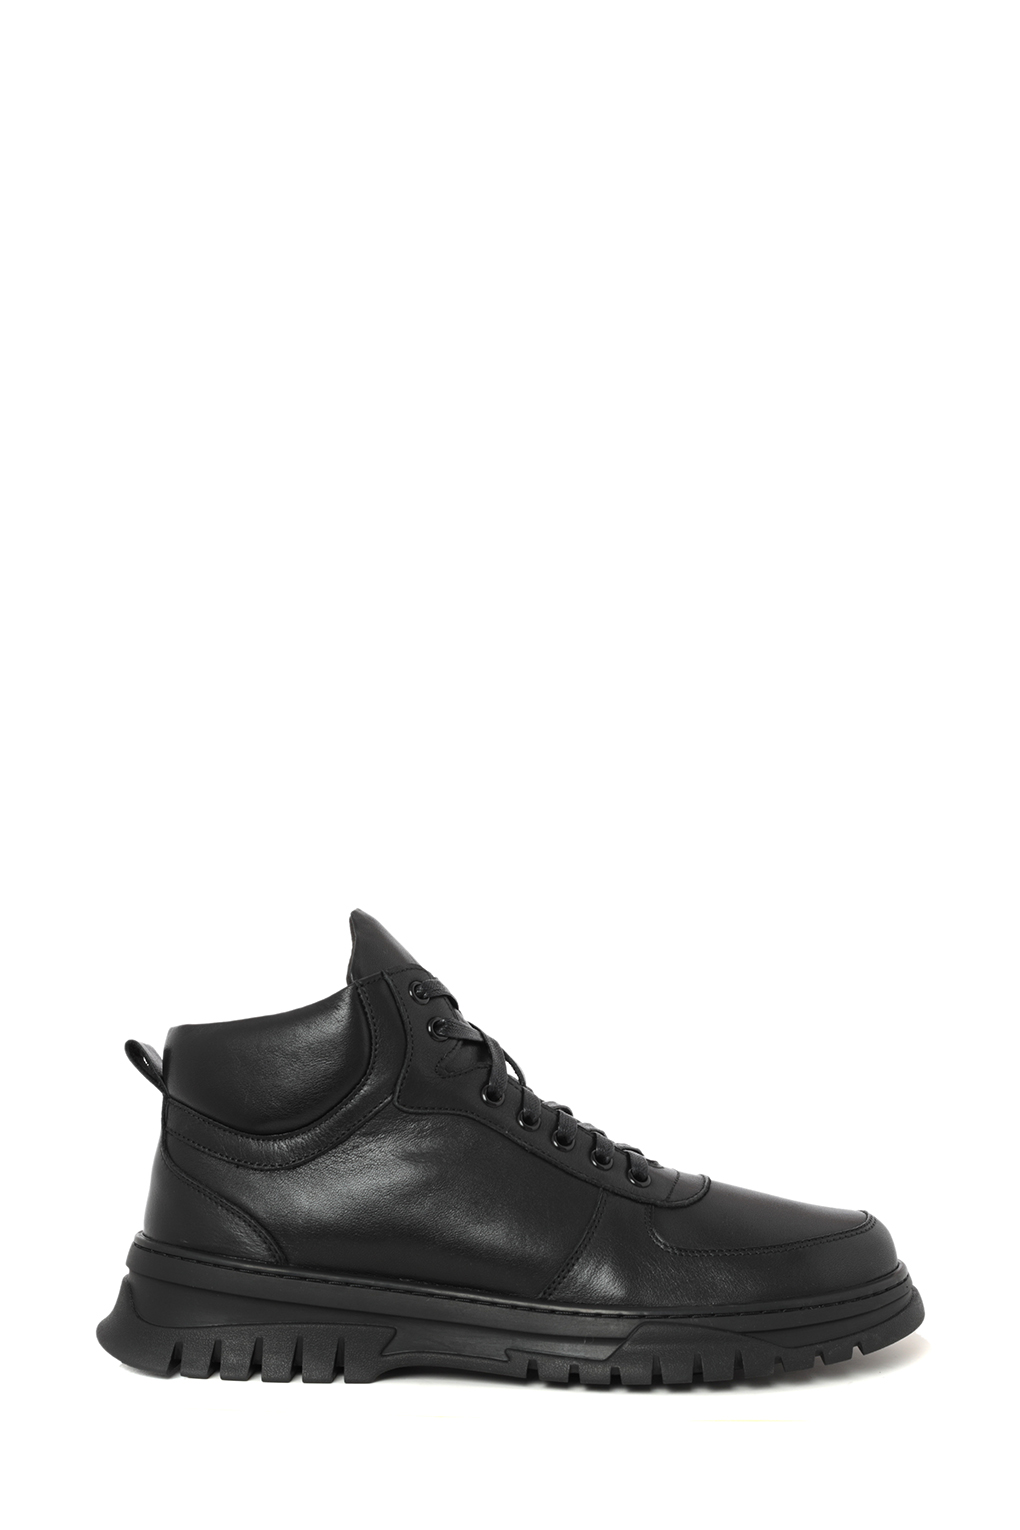 Ботинки мужские Abricot AN-0346B/black черные 42 RU